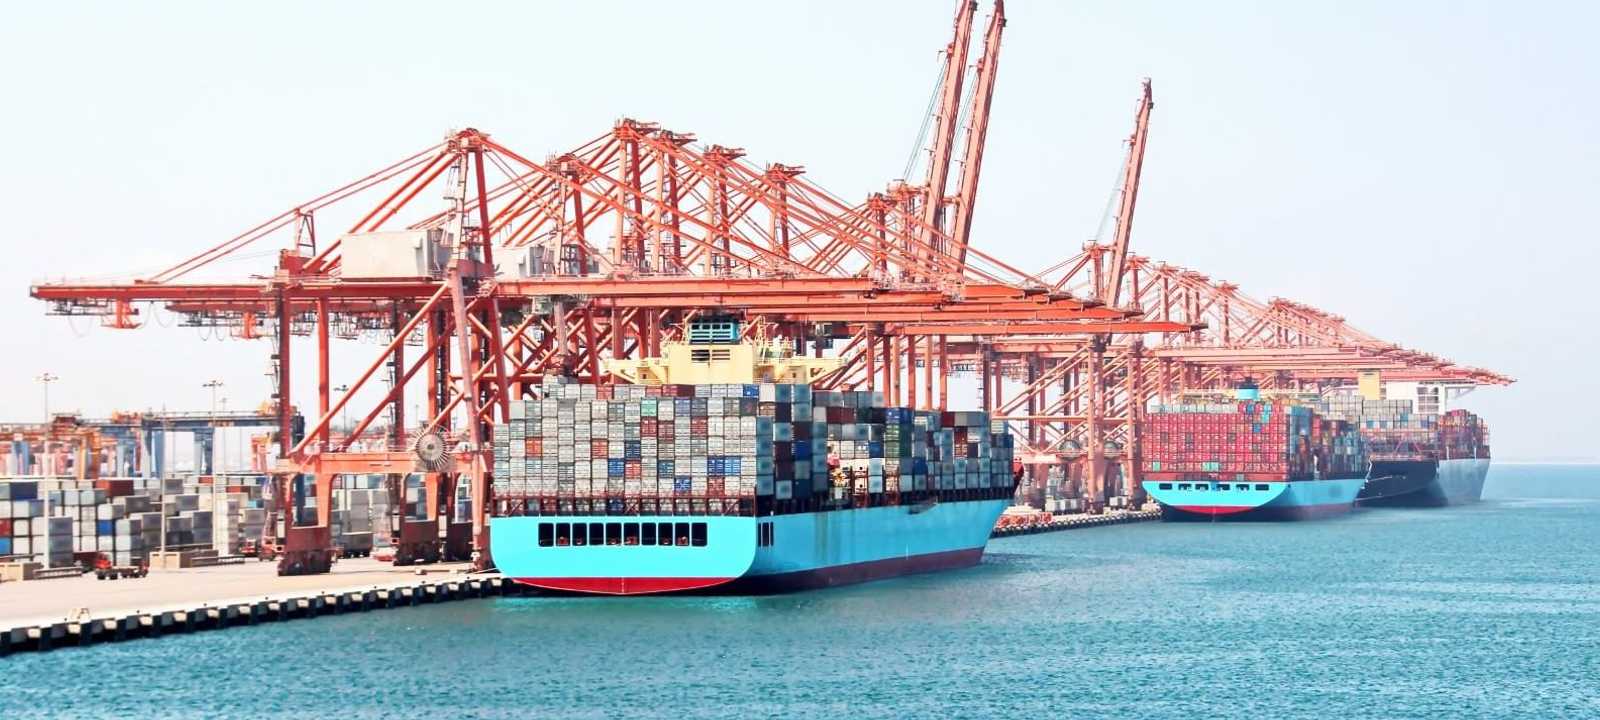 ميناء صلالة - سلطنة عمان